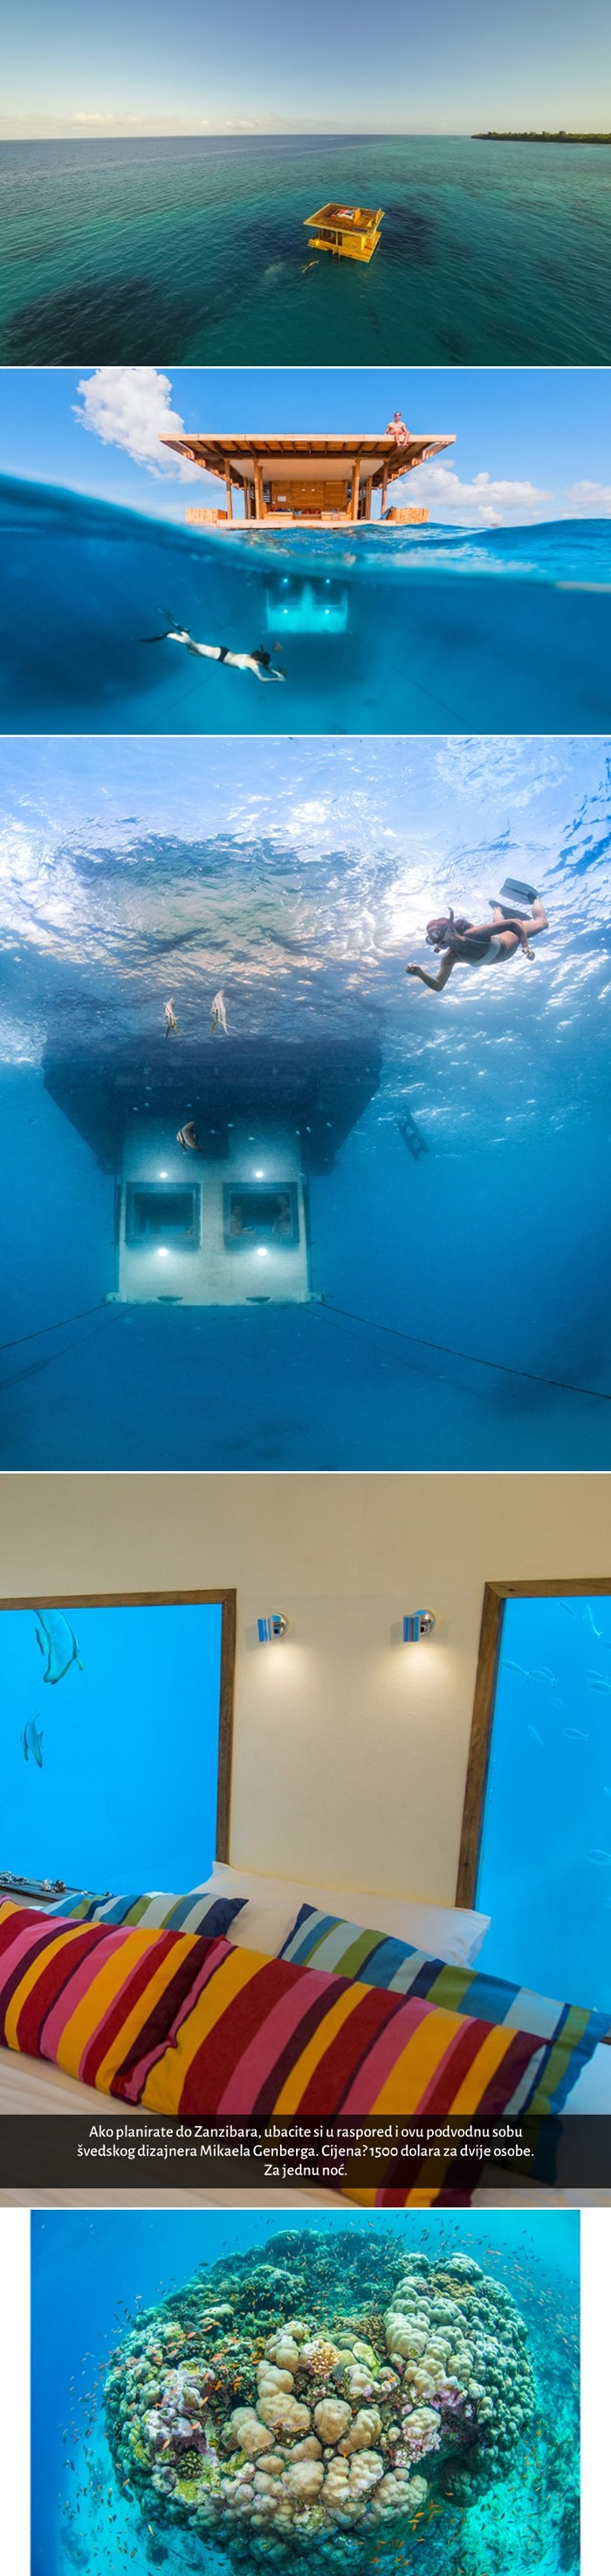 GALERIJA: Pogodite koliko košta noćenje u ovoj podvodnoj sobi?